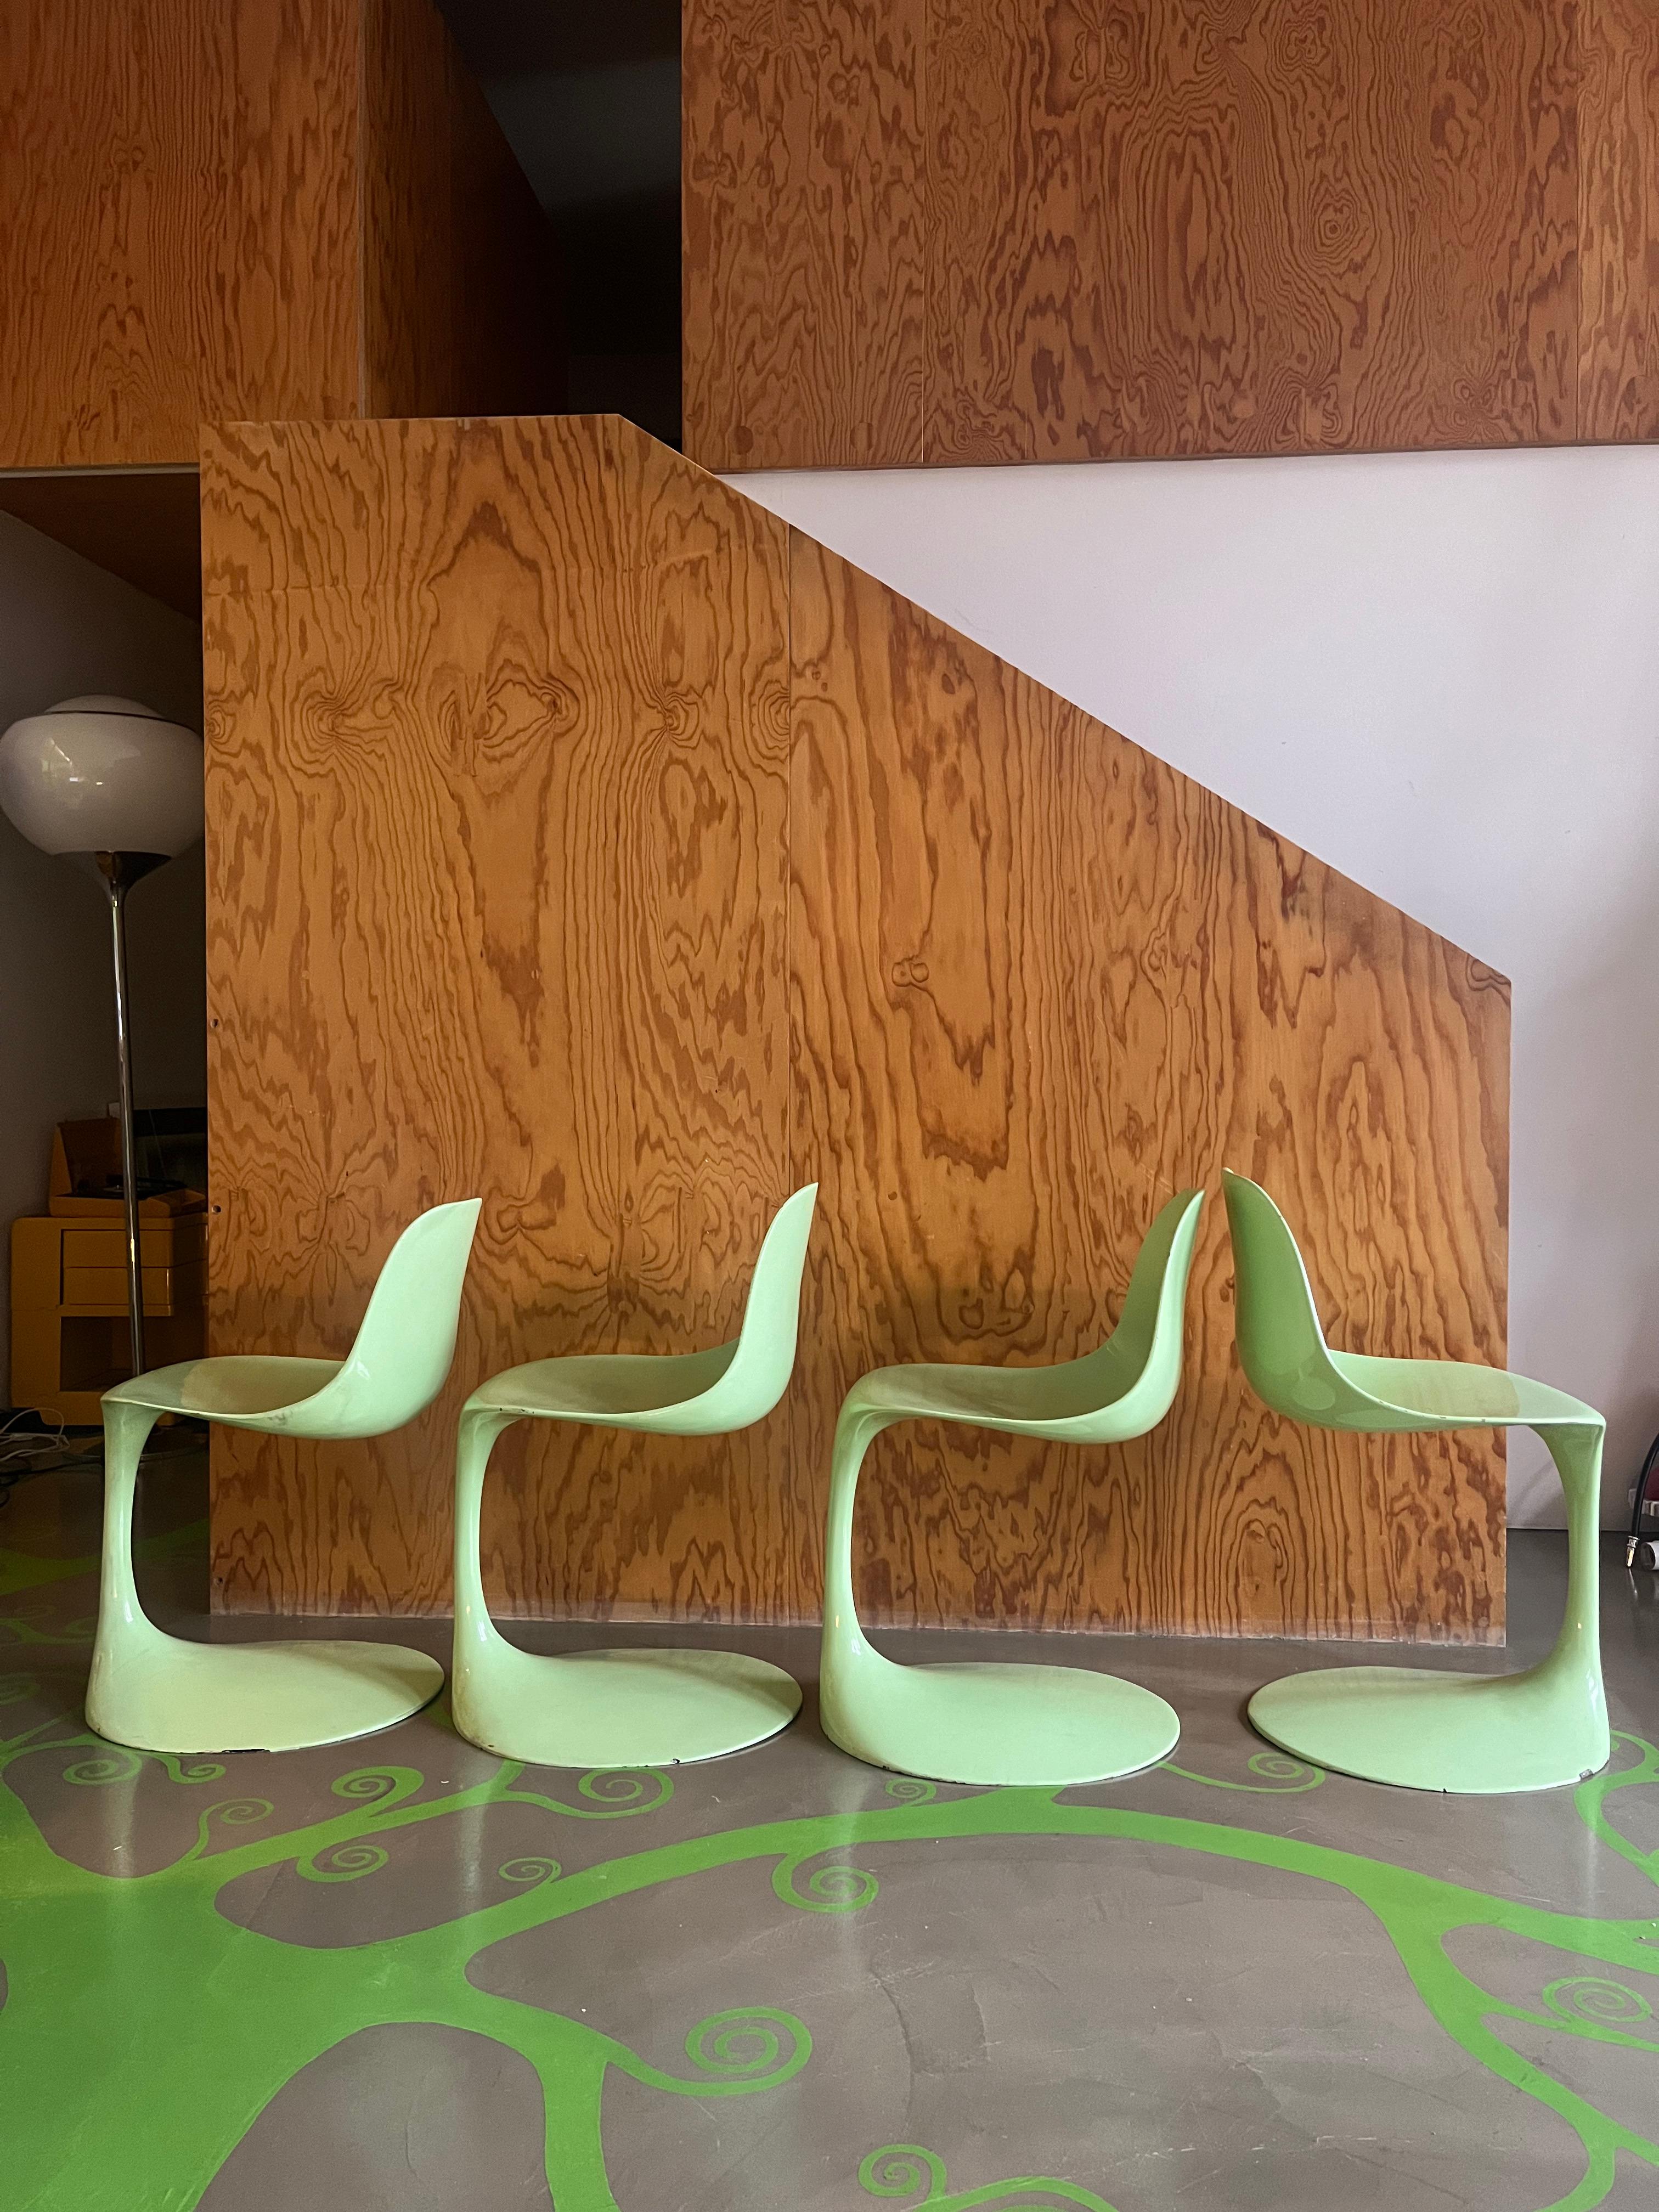 4 sedie disegnate da Rudi Bonzanini per Tecnosalotto. 
Le sedie in vetroresina in colorazione verde mela brillante sono in buone condizioni. Piccole differenze di altezza tra loro. 

Il colore è mancante in alcuni punti della base.  

Si intravede